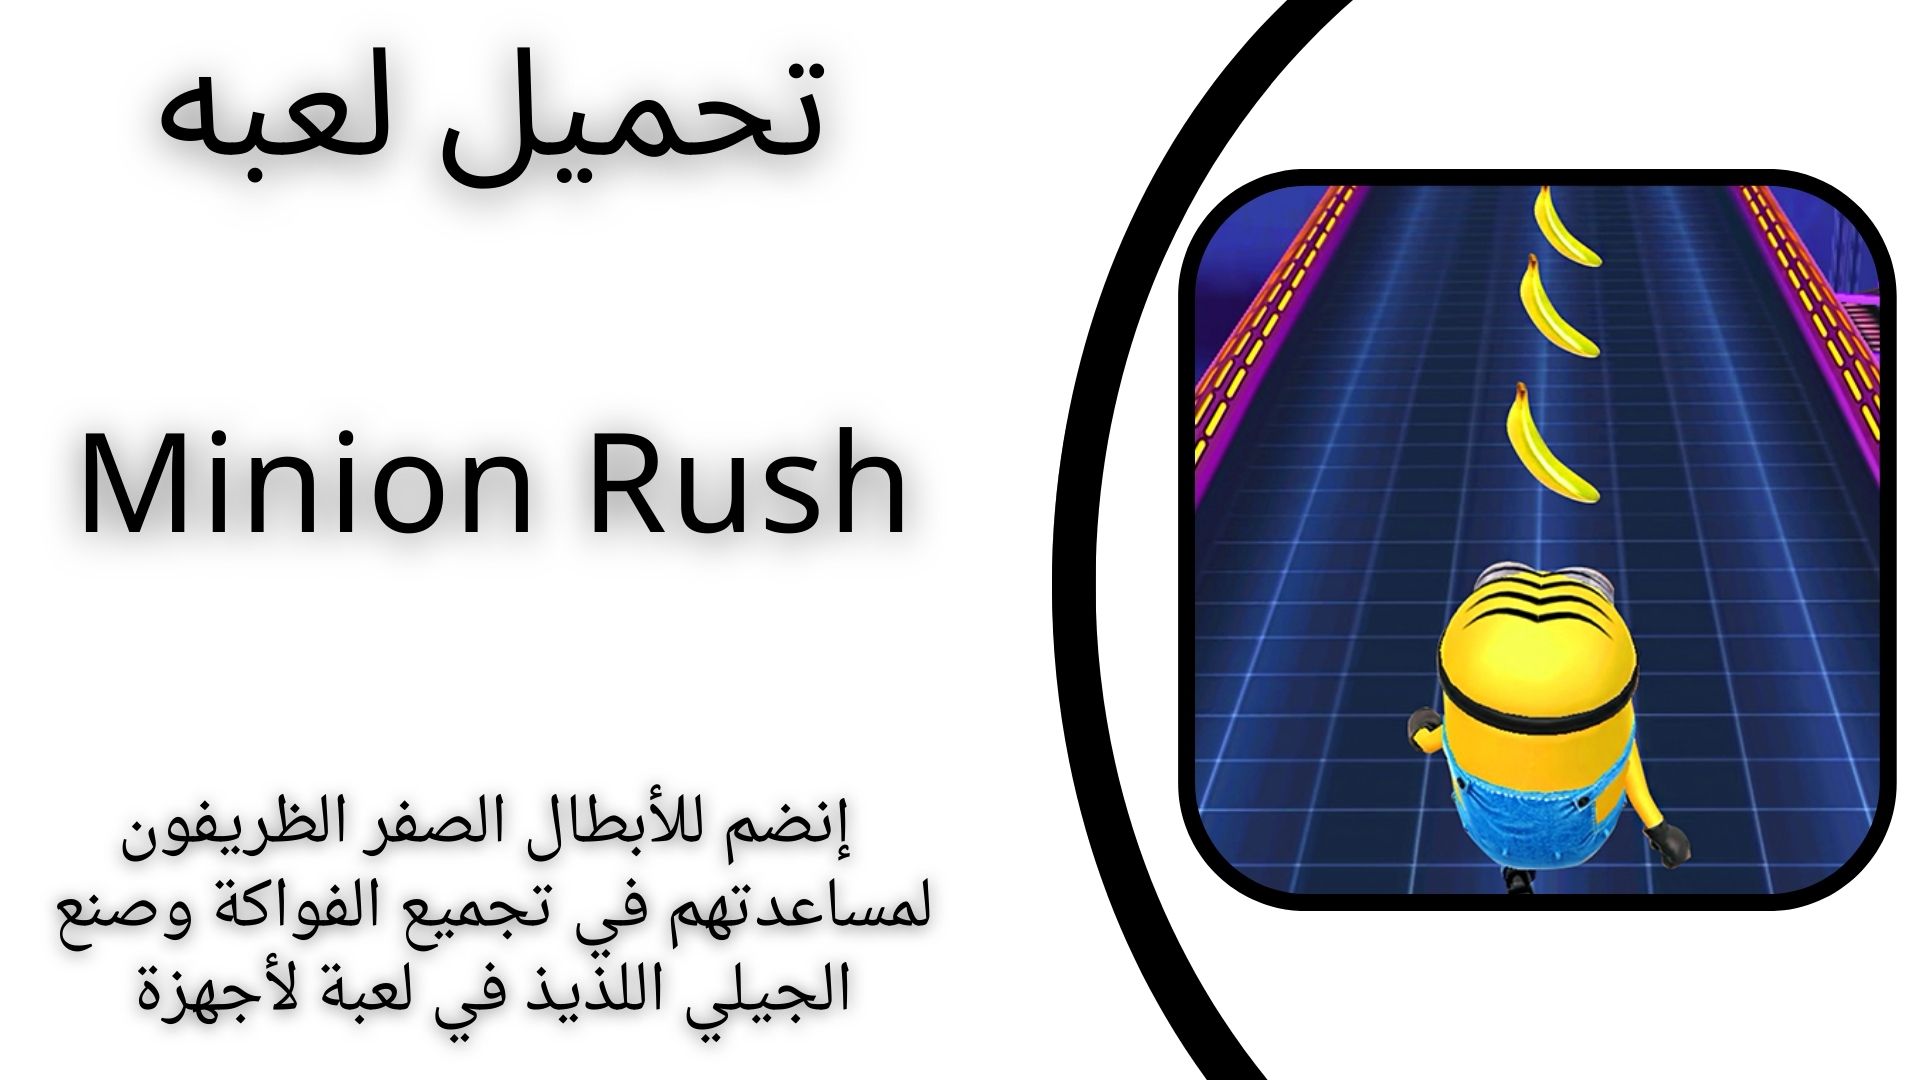 تحميل لعبة انطلاق المينيون Minion Rush للاندرويد و الايفون اخر اصدار مجانا